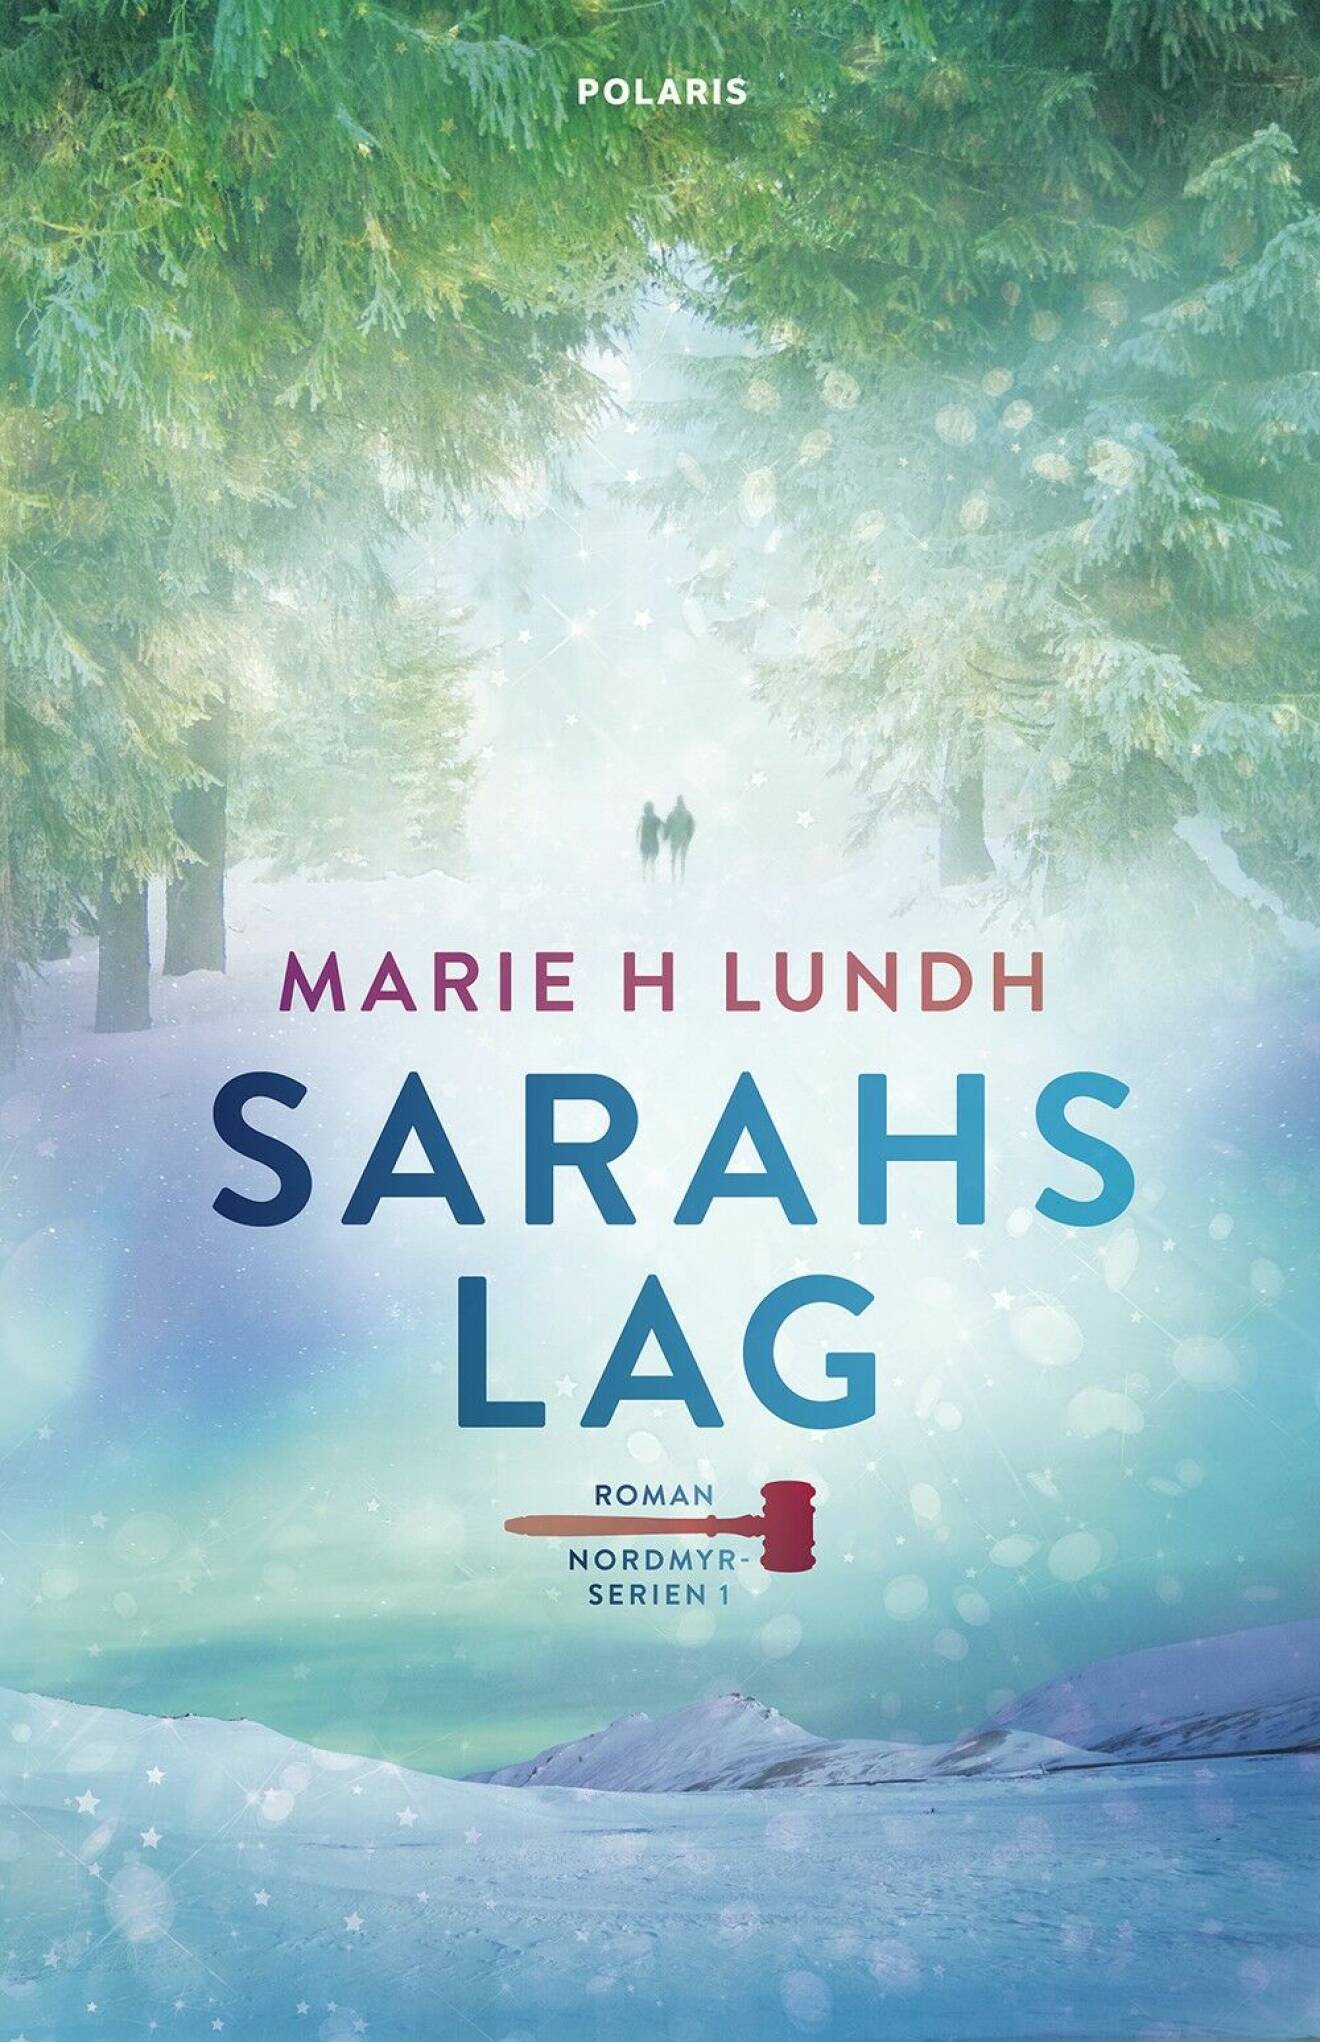 Sarahs lag av Marie H Lundh.